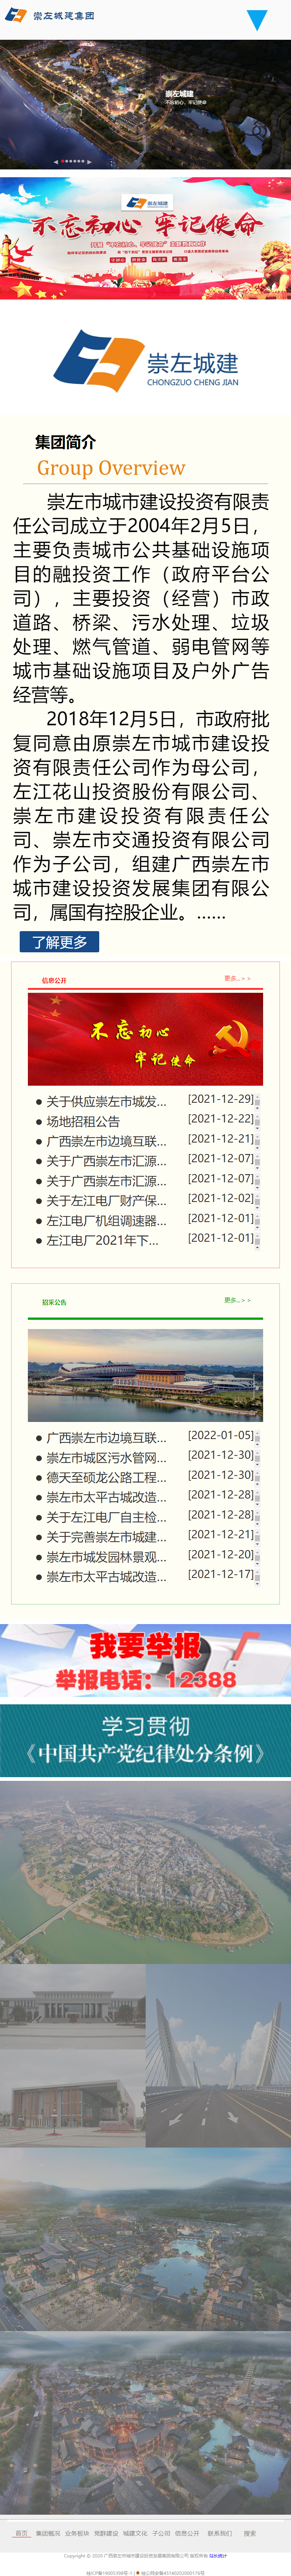 广西崇左市城市建设投资发展集团有限公司网站案例